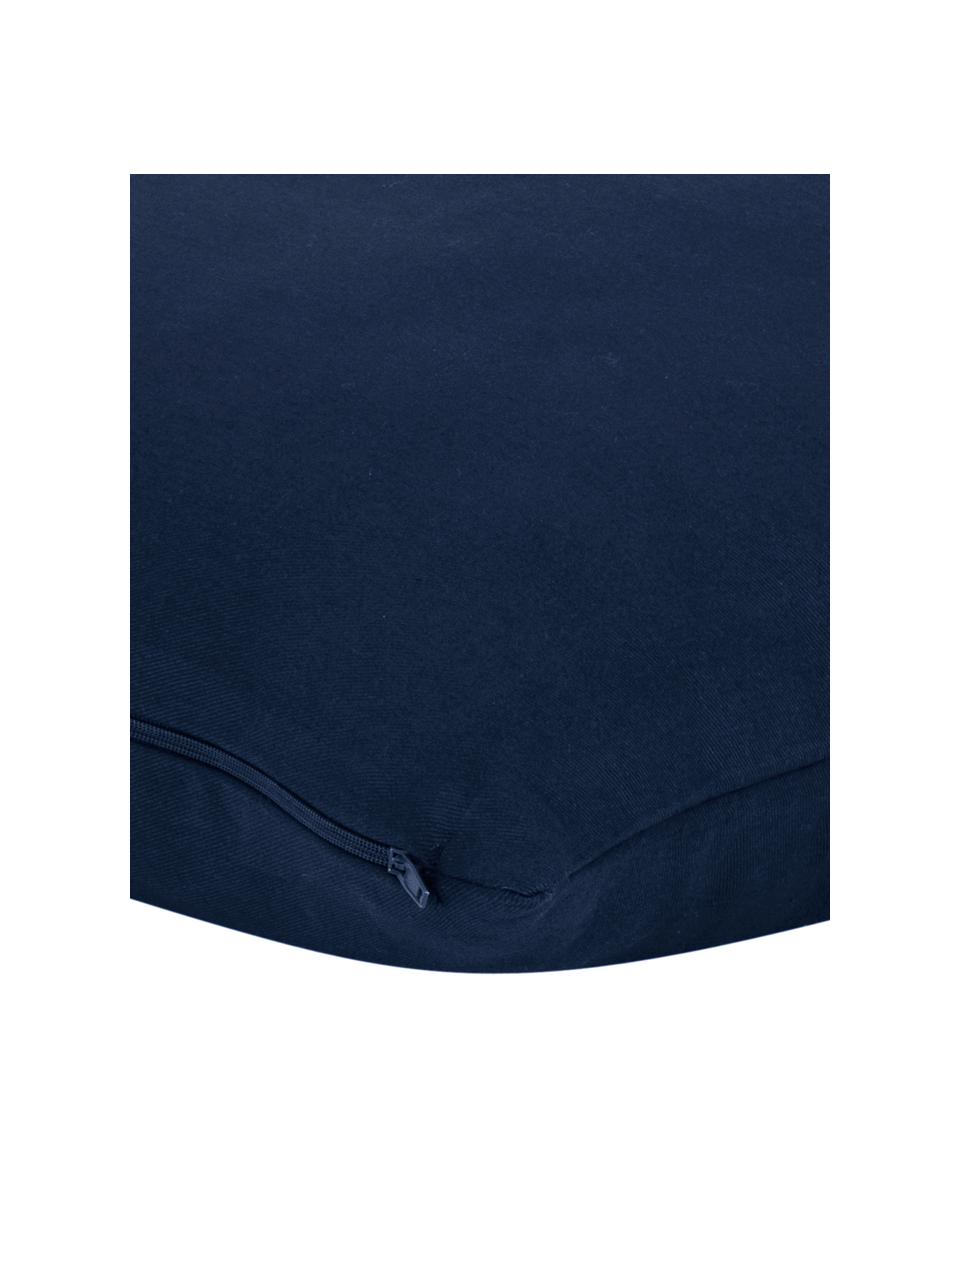 Baumwoll-Kissenhülle Mads in Navyblau, 100% Baumwolle, Navyblau, 40 x 40 cm